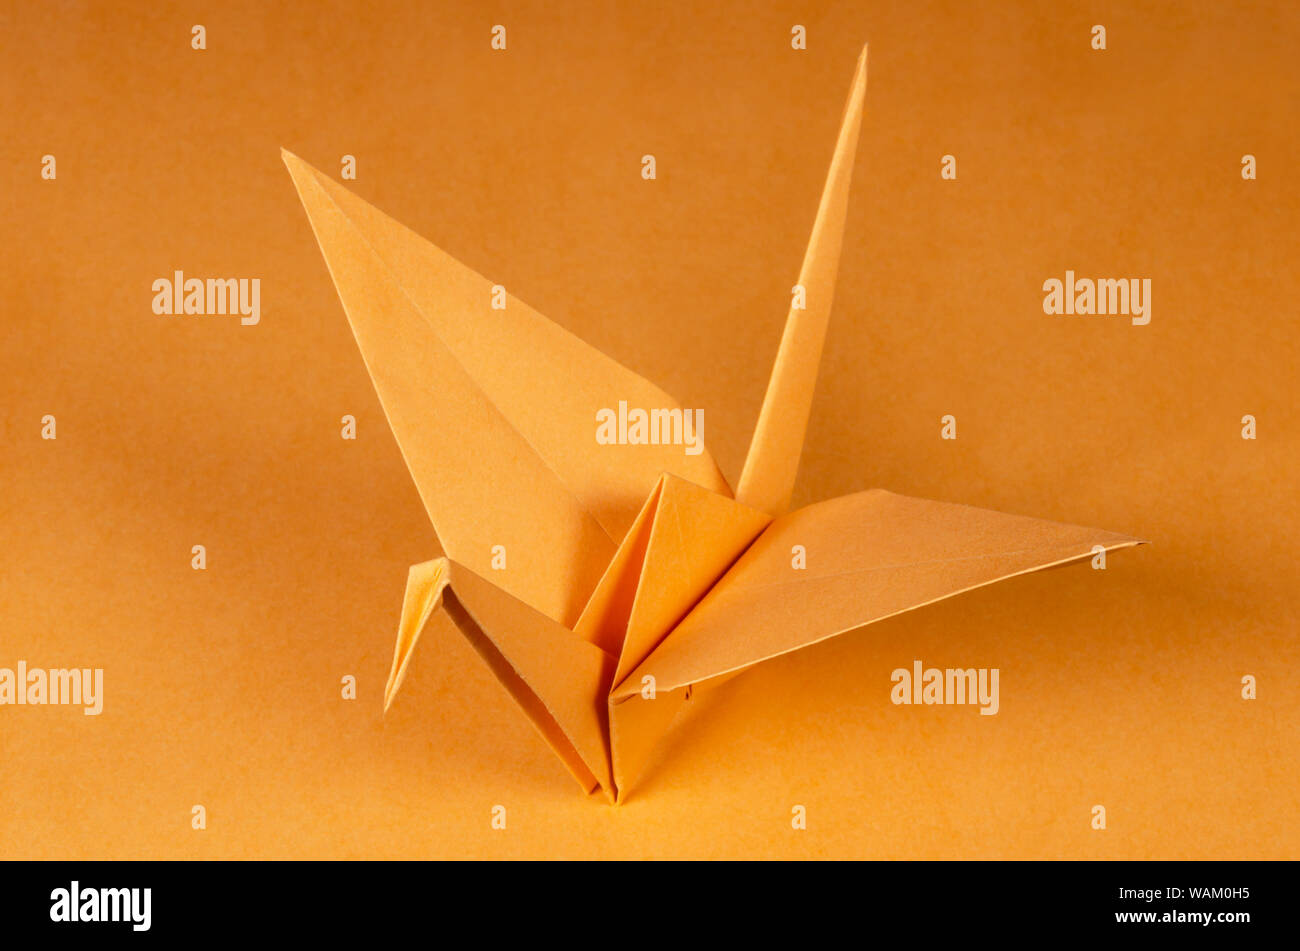 Grúa origami naranja sobre fondo naranja. Tsuru. Arte japonés de plegado de papel. Hoja de papel cuadrado plano trasladados en una escultura terminada. Foto de stock